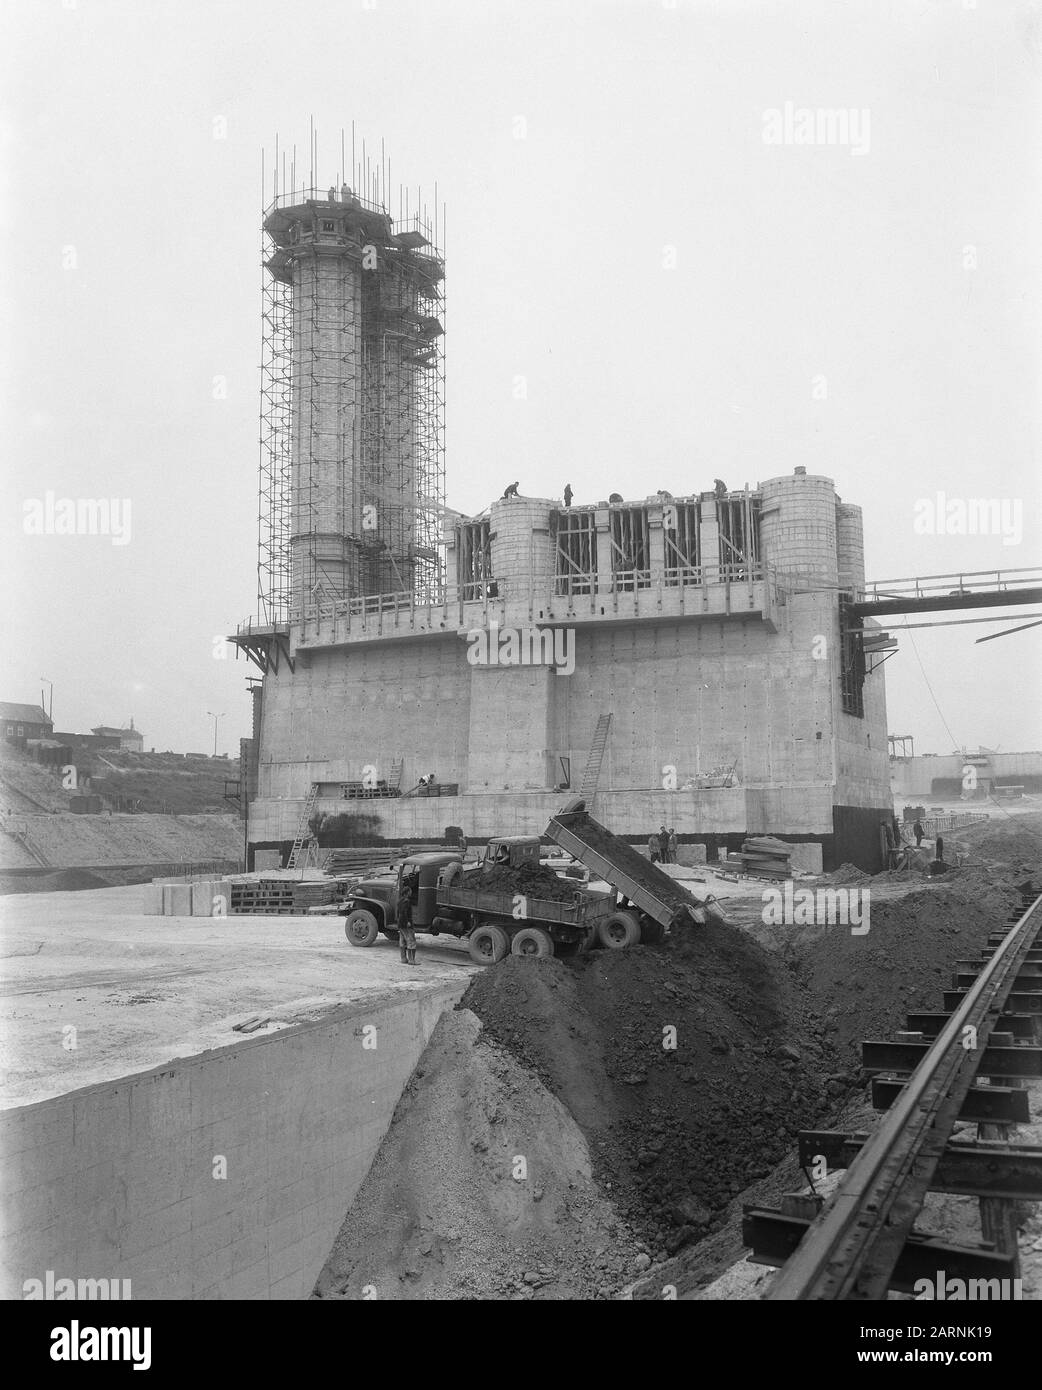 Velsertunnel/Affected Date: June 4, 1957 Setting name: Velsertunnel Stock Photo